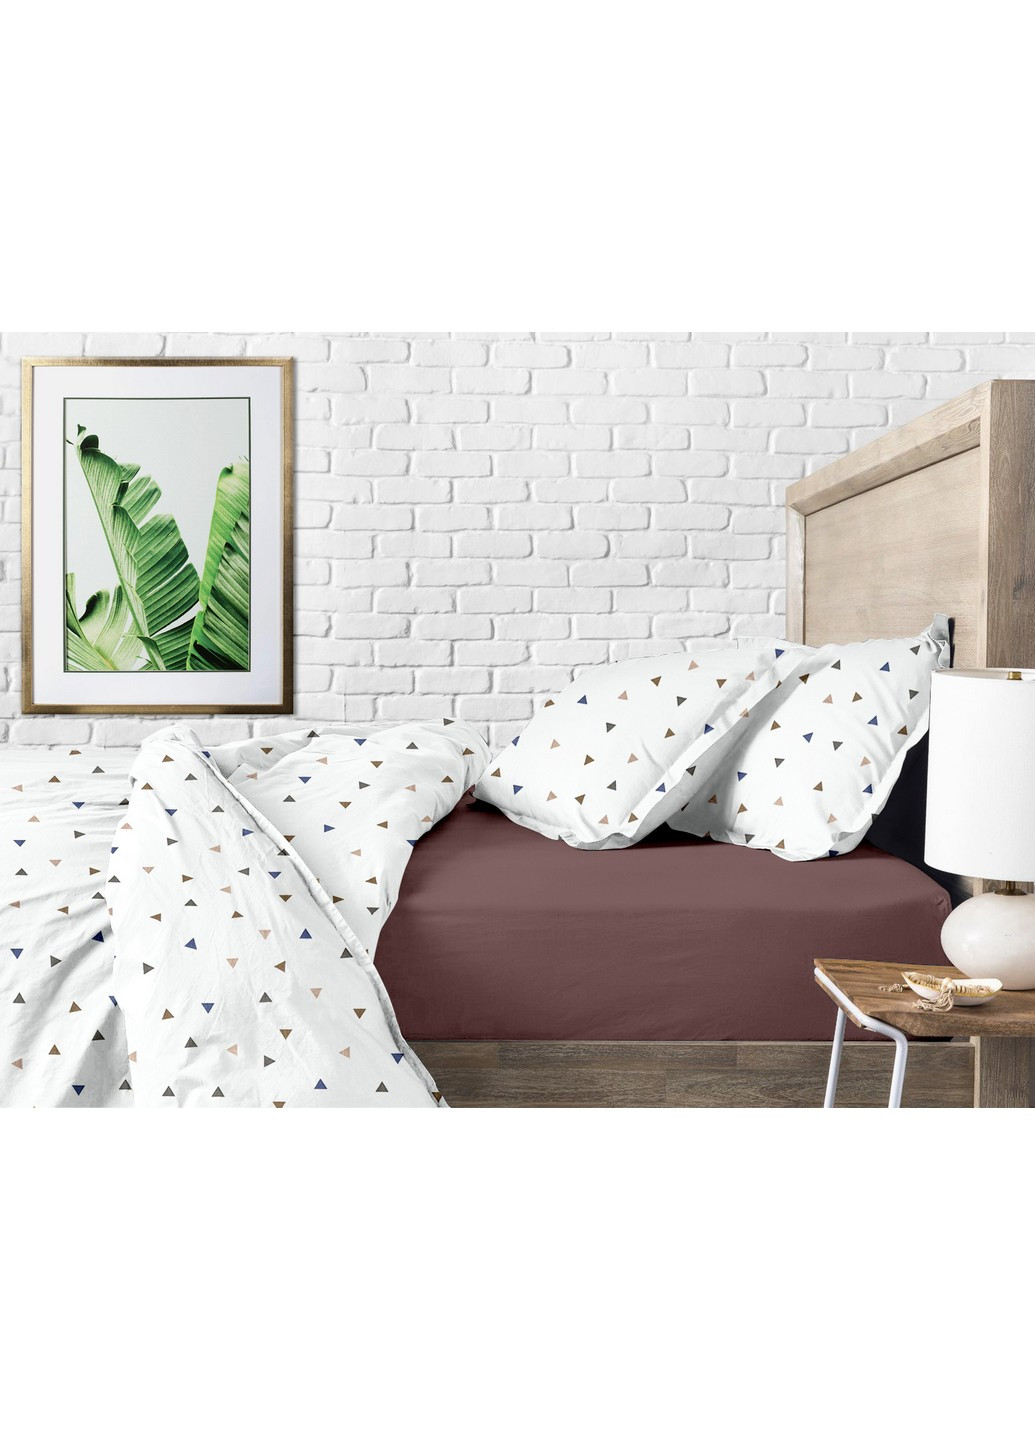 Комплект подросткового постельного белья на резинке Delta Color Chocolate 160x220 см (4822052080962) Cosas (251850299)